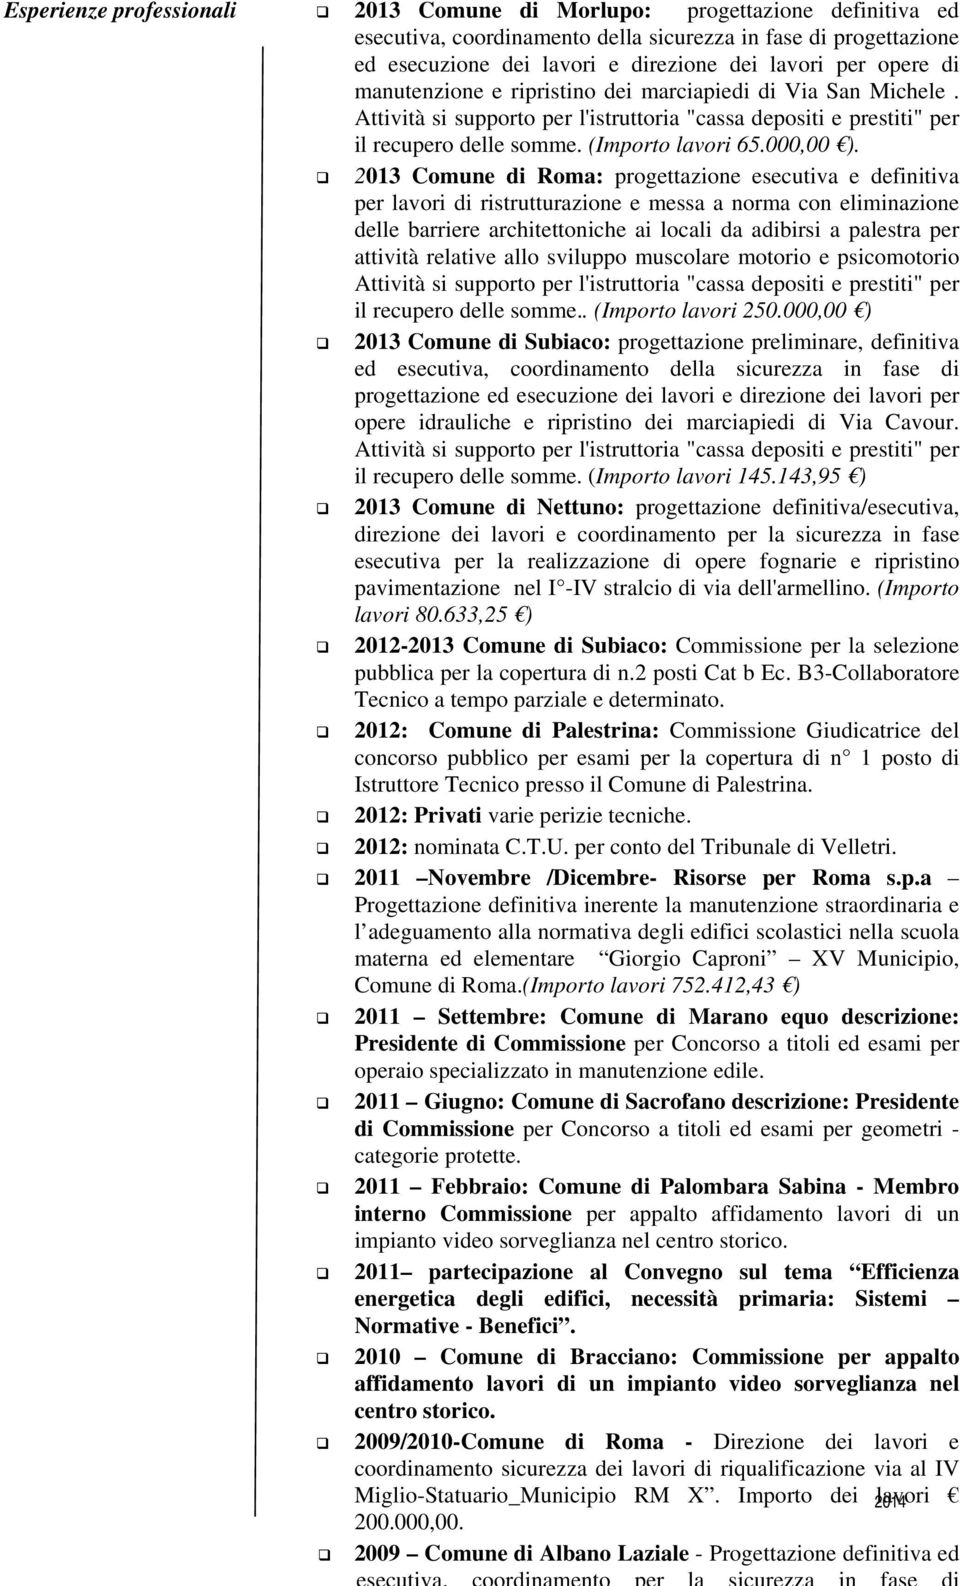 2013 Comune di Roma: progettazione esecutiva e definitiva per lavori di ristrutturazione e messa a norma con eliminazione delle barriere architettoniche ai locali da adibirsi a palestra per attività